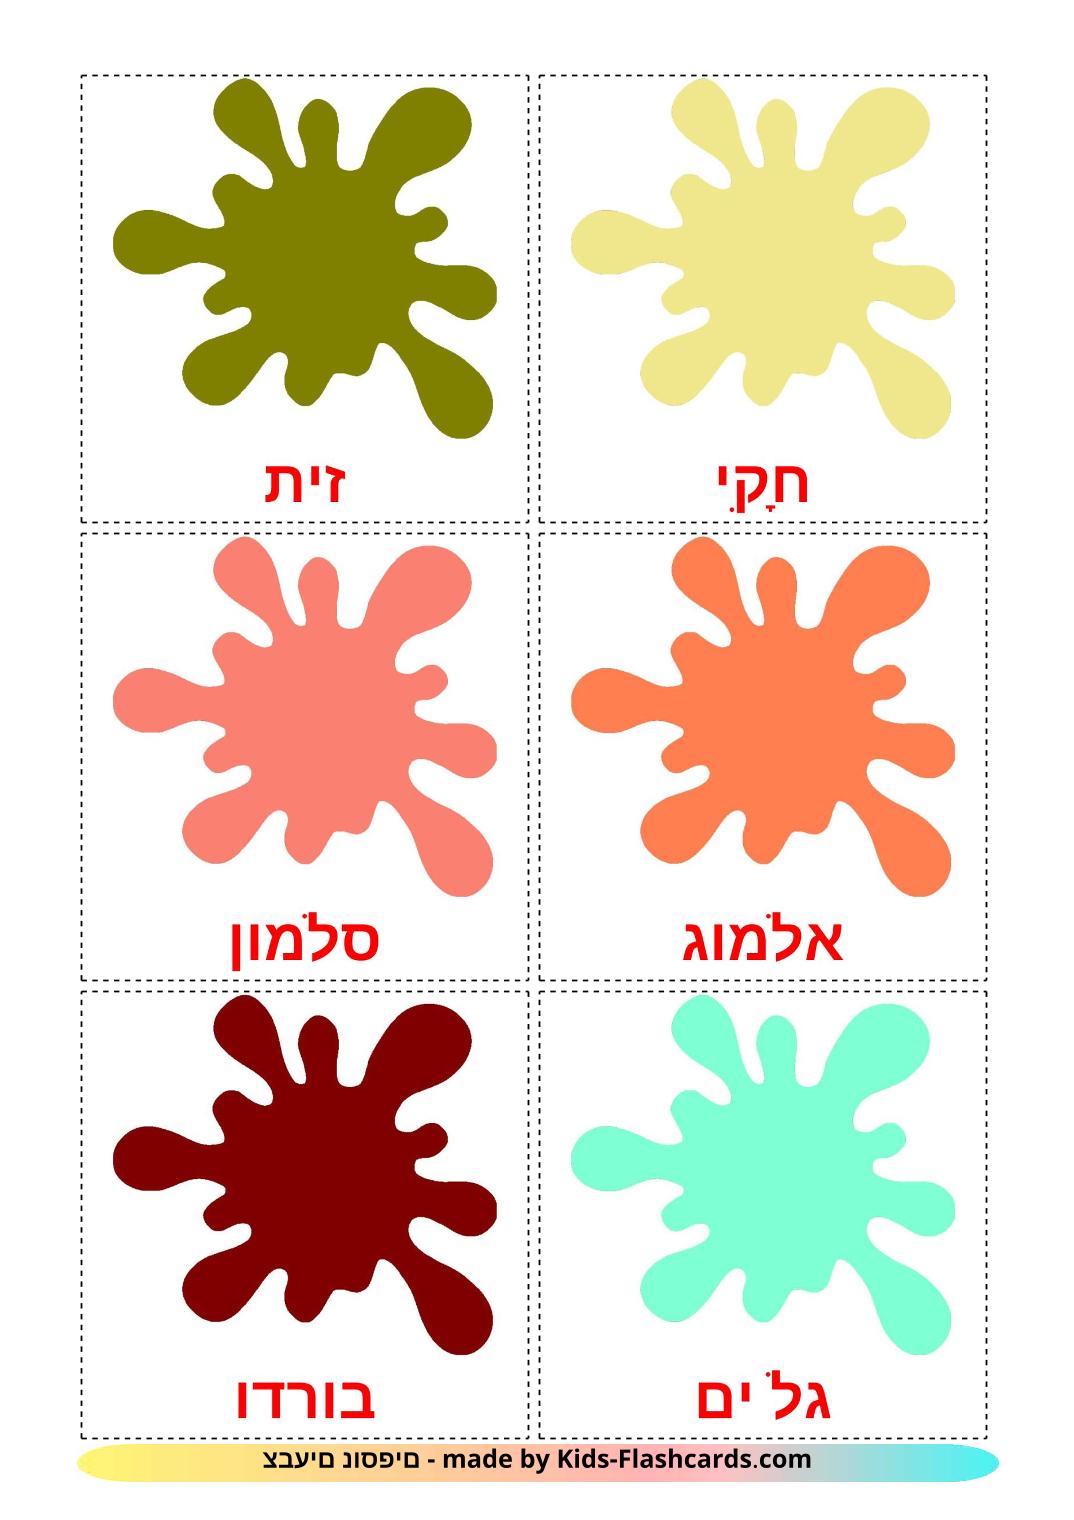 Colores secundarios - 20 fichas de hebreo para imprimir gratis 